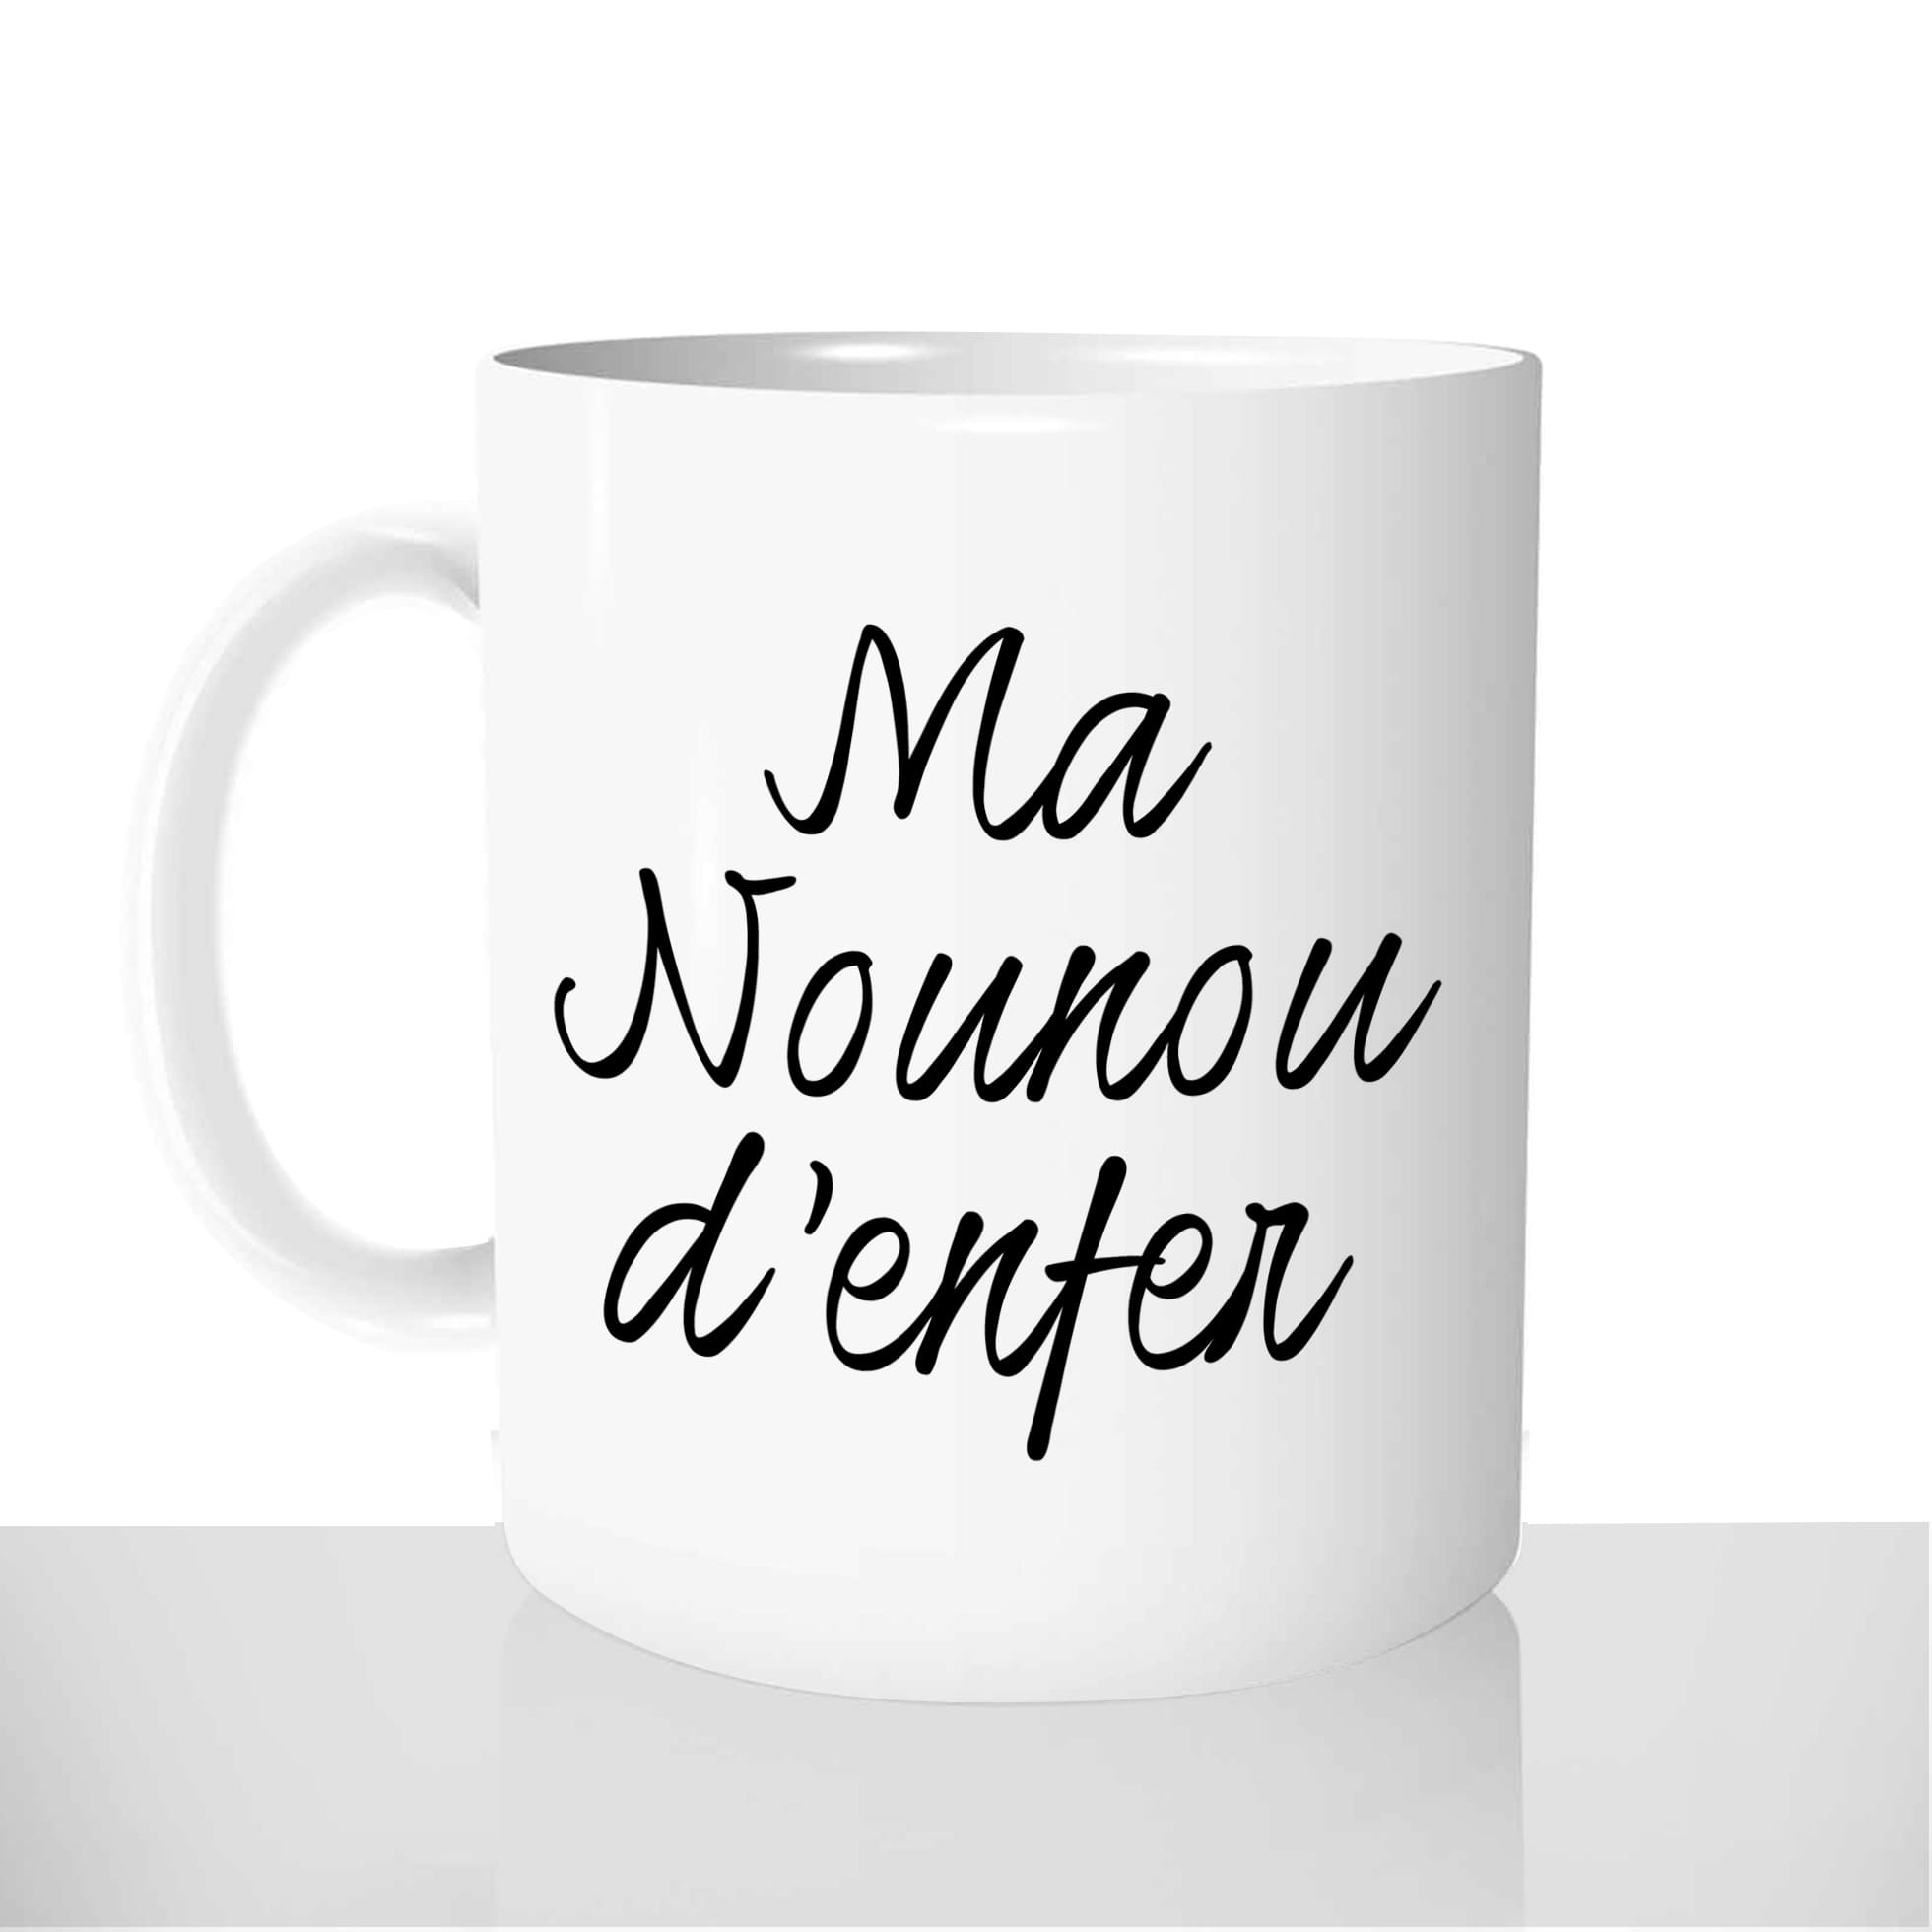 mug-blanc-brillant-personnalisé-offrir-nou-nounou-denfer-prenom-anniversaire-noel-amis-fun-personnalisable-idée-cadeau-original